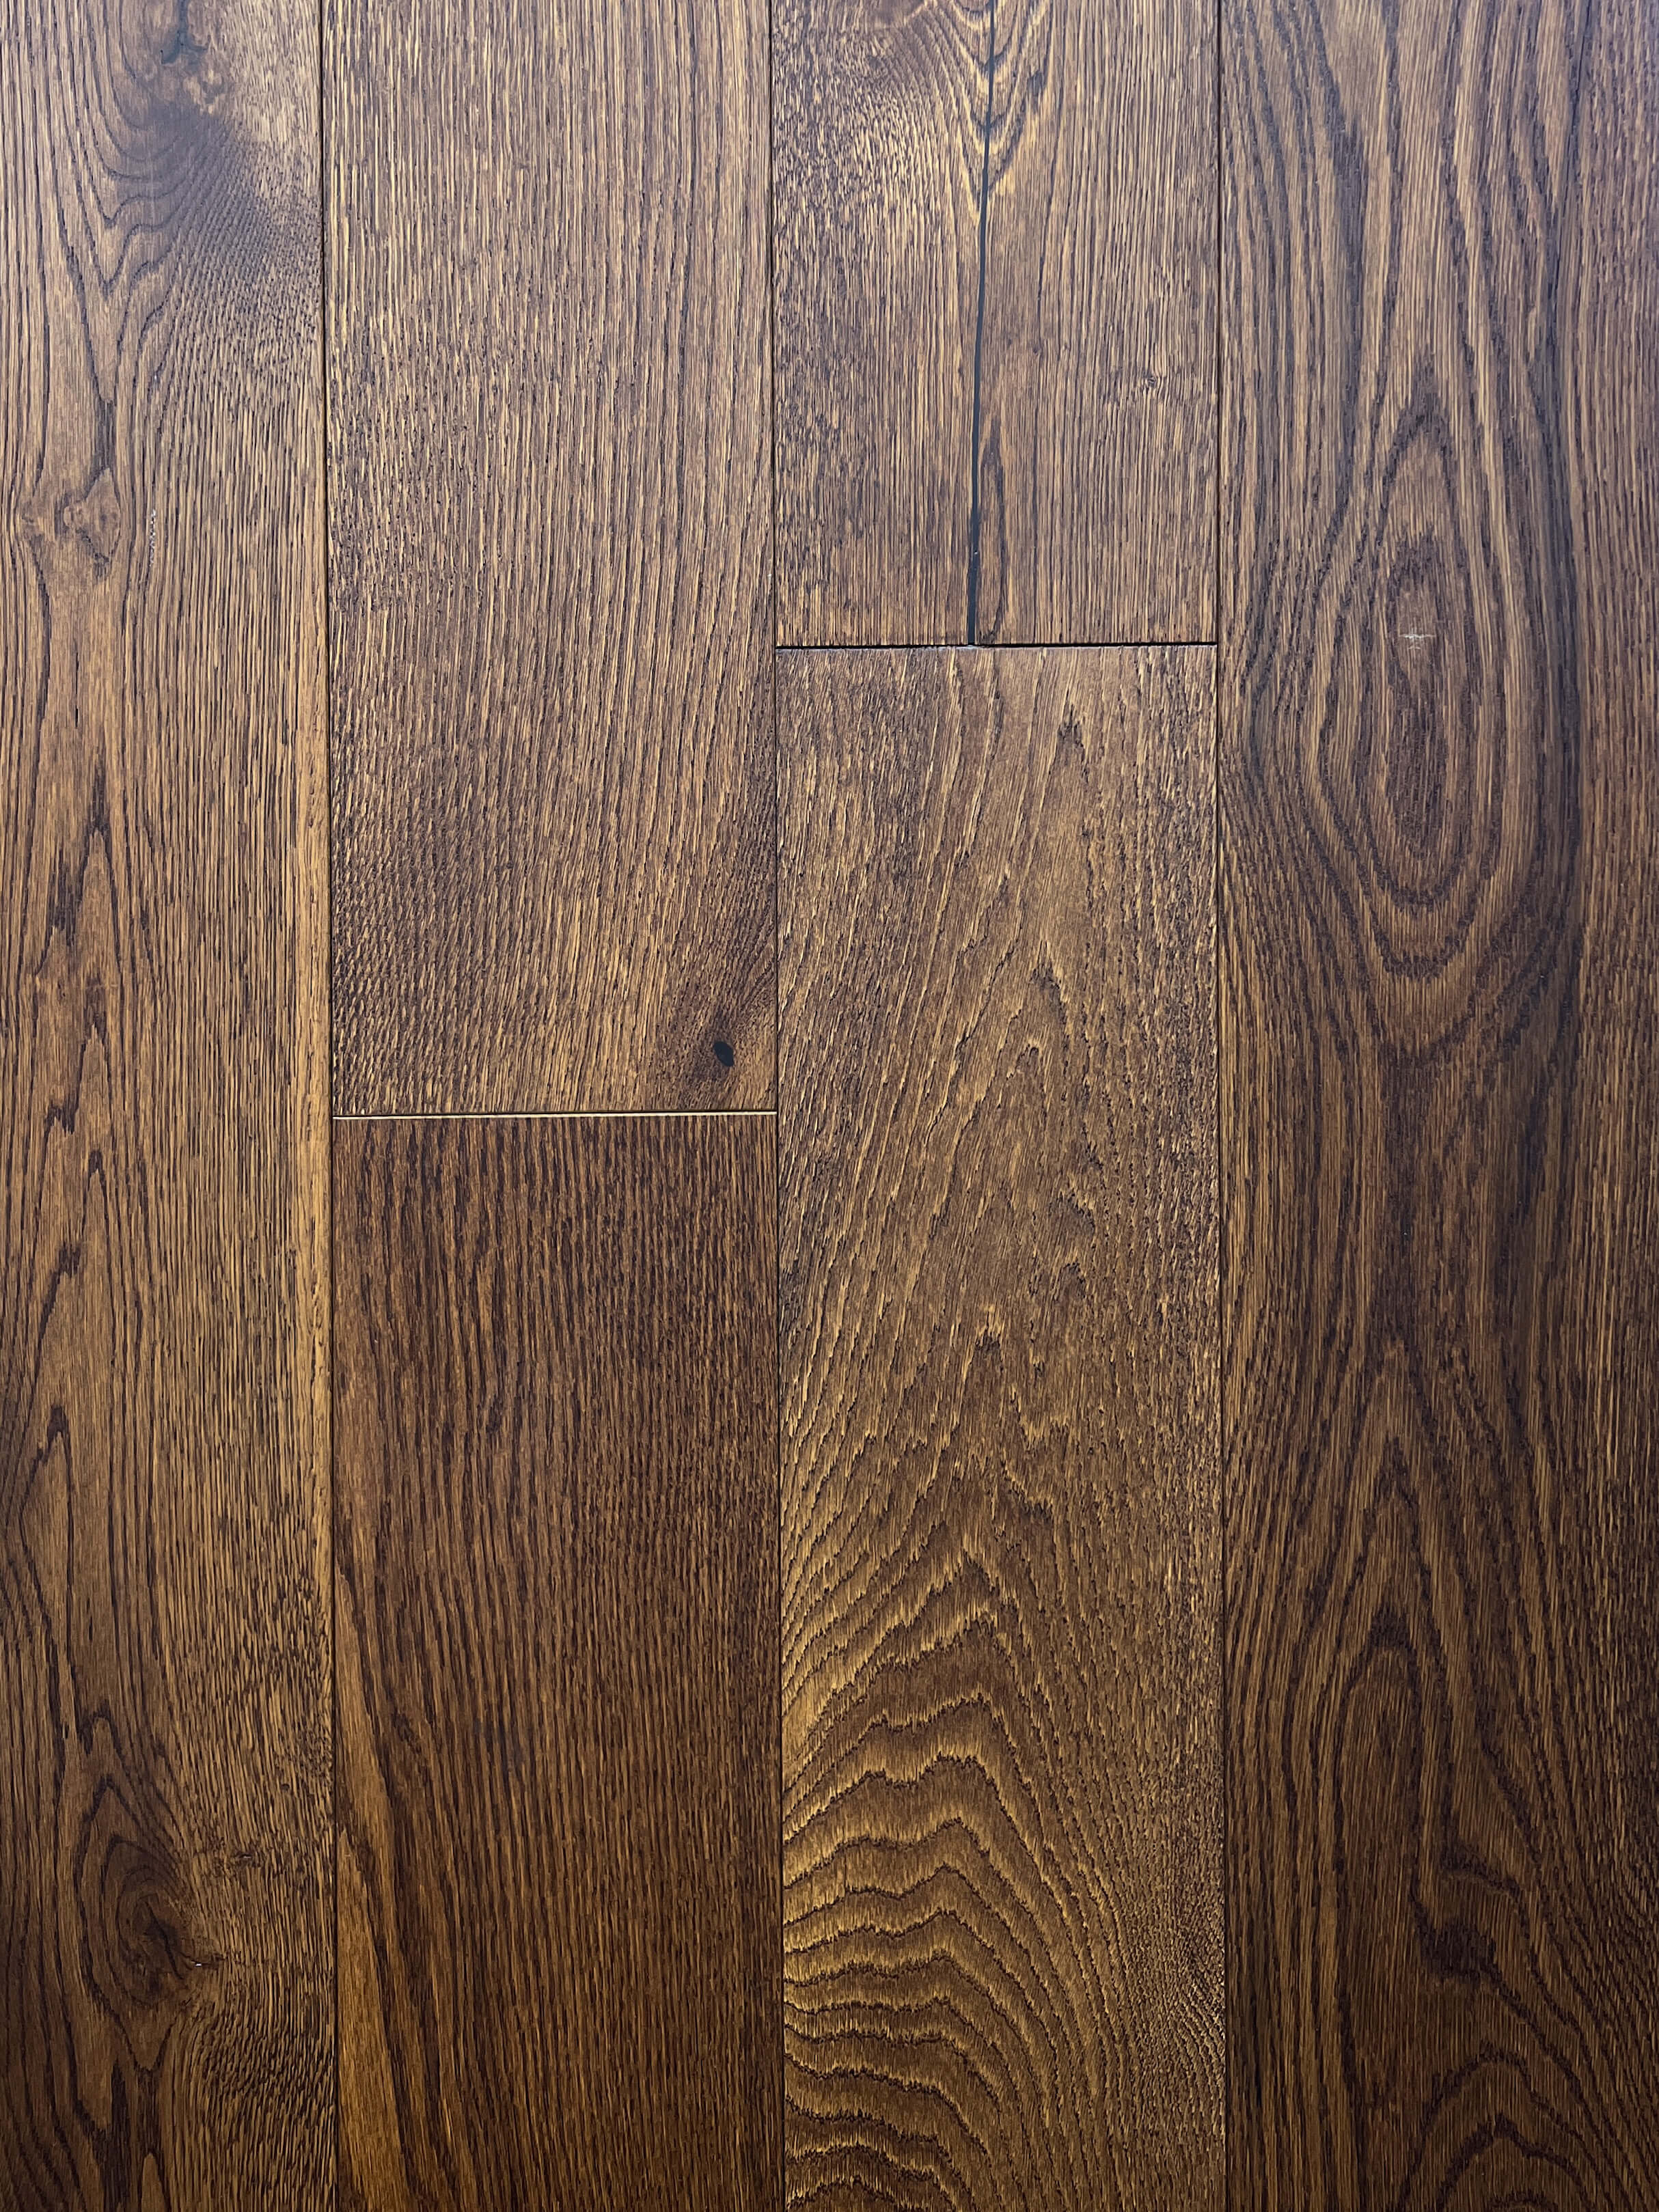 Floorest - 7 1/2 x 3/4 - Oak Royal Brown (3MM Top) - Engineered Hardwood - 27.20 SF/b